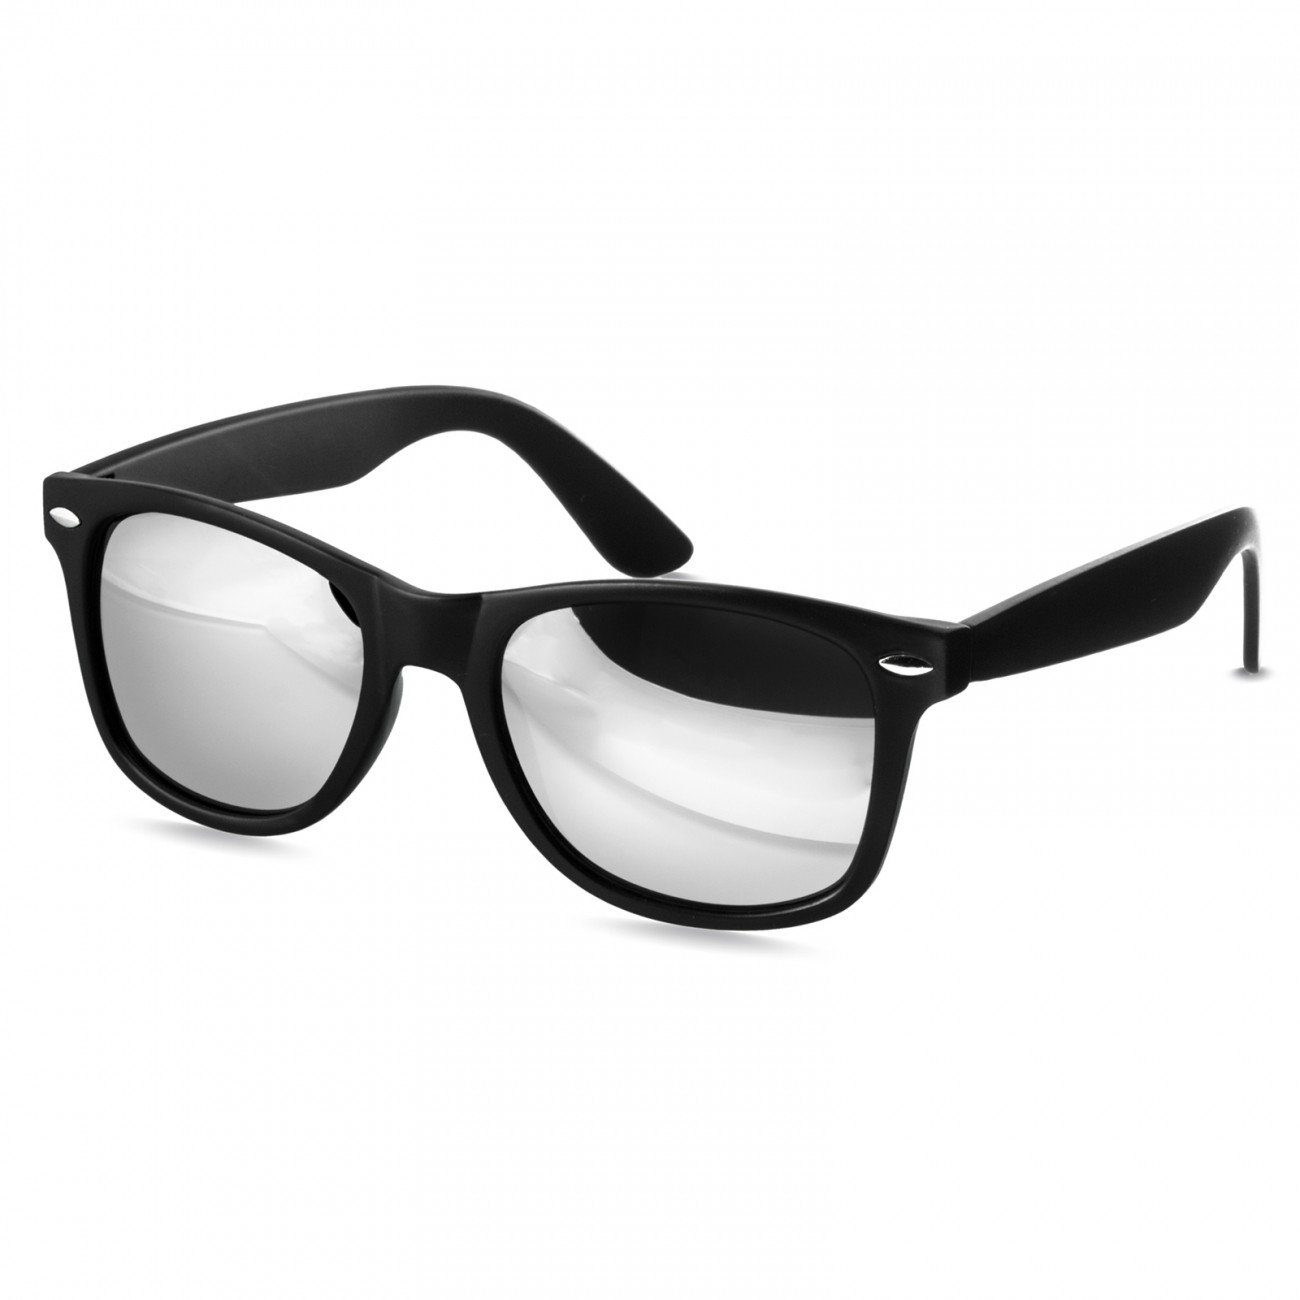 Caspar Sonnenbrille SG017 Damen RETRO Designbrille kpl. matt schwarz / silber verspiegelt